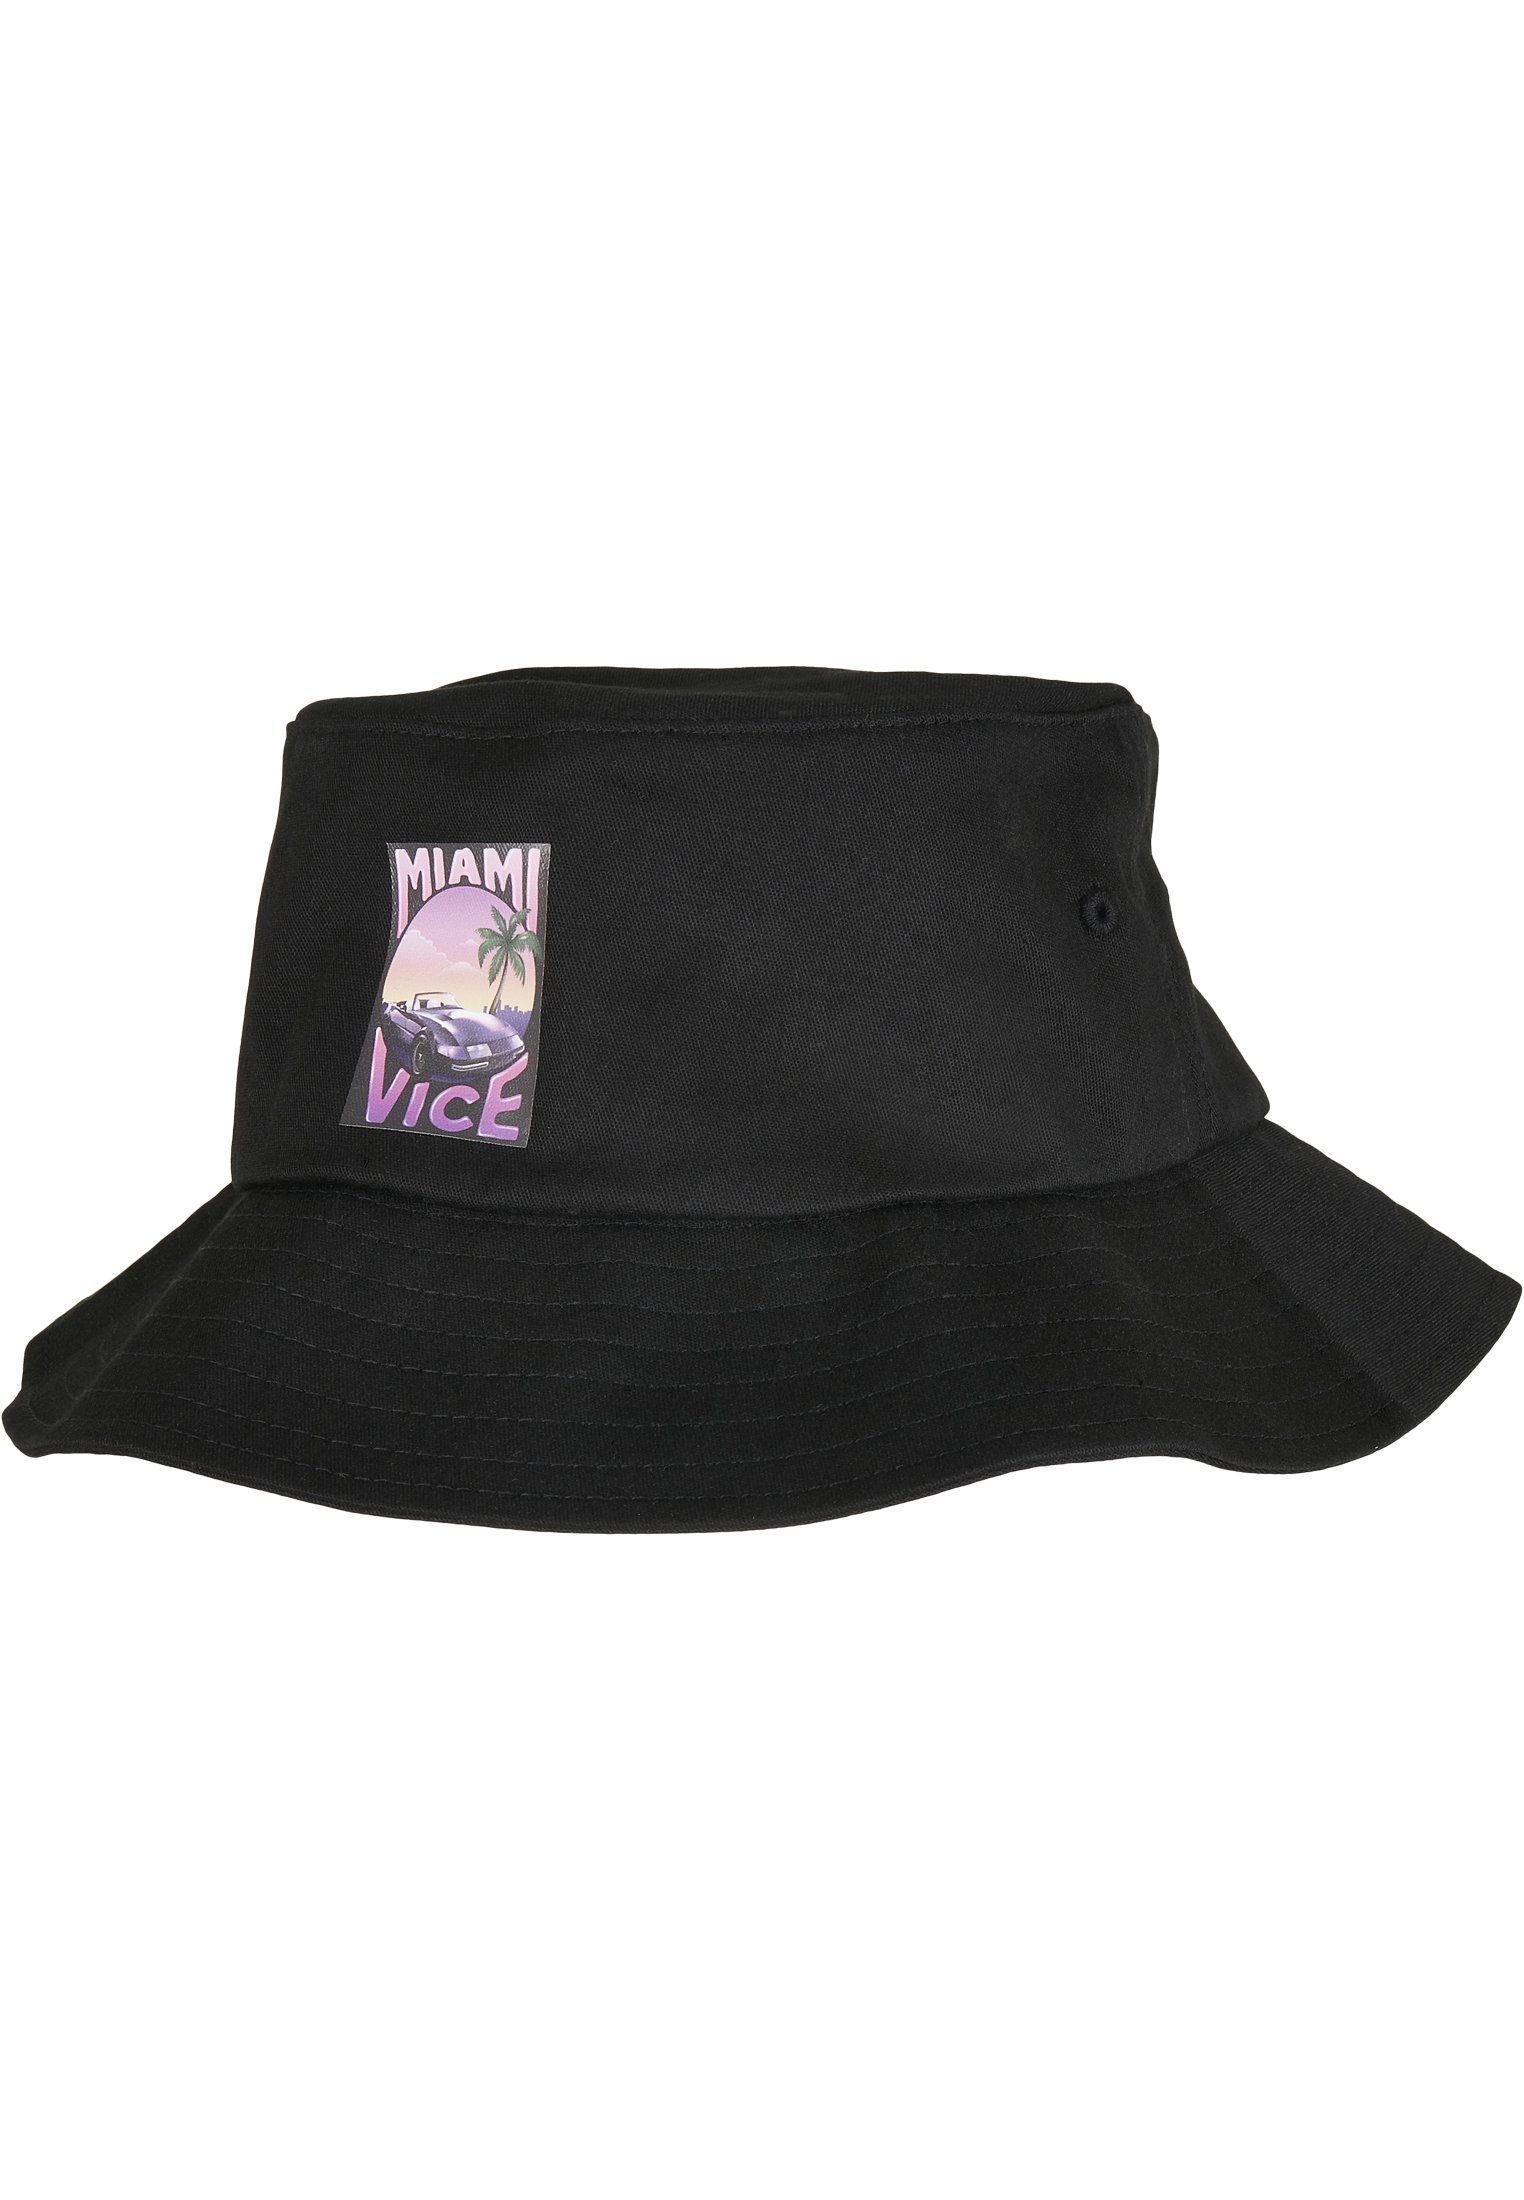 Bucket Bucket Flex Merchcode Vice Hat Print Cap Hat Miami